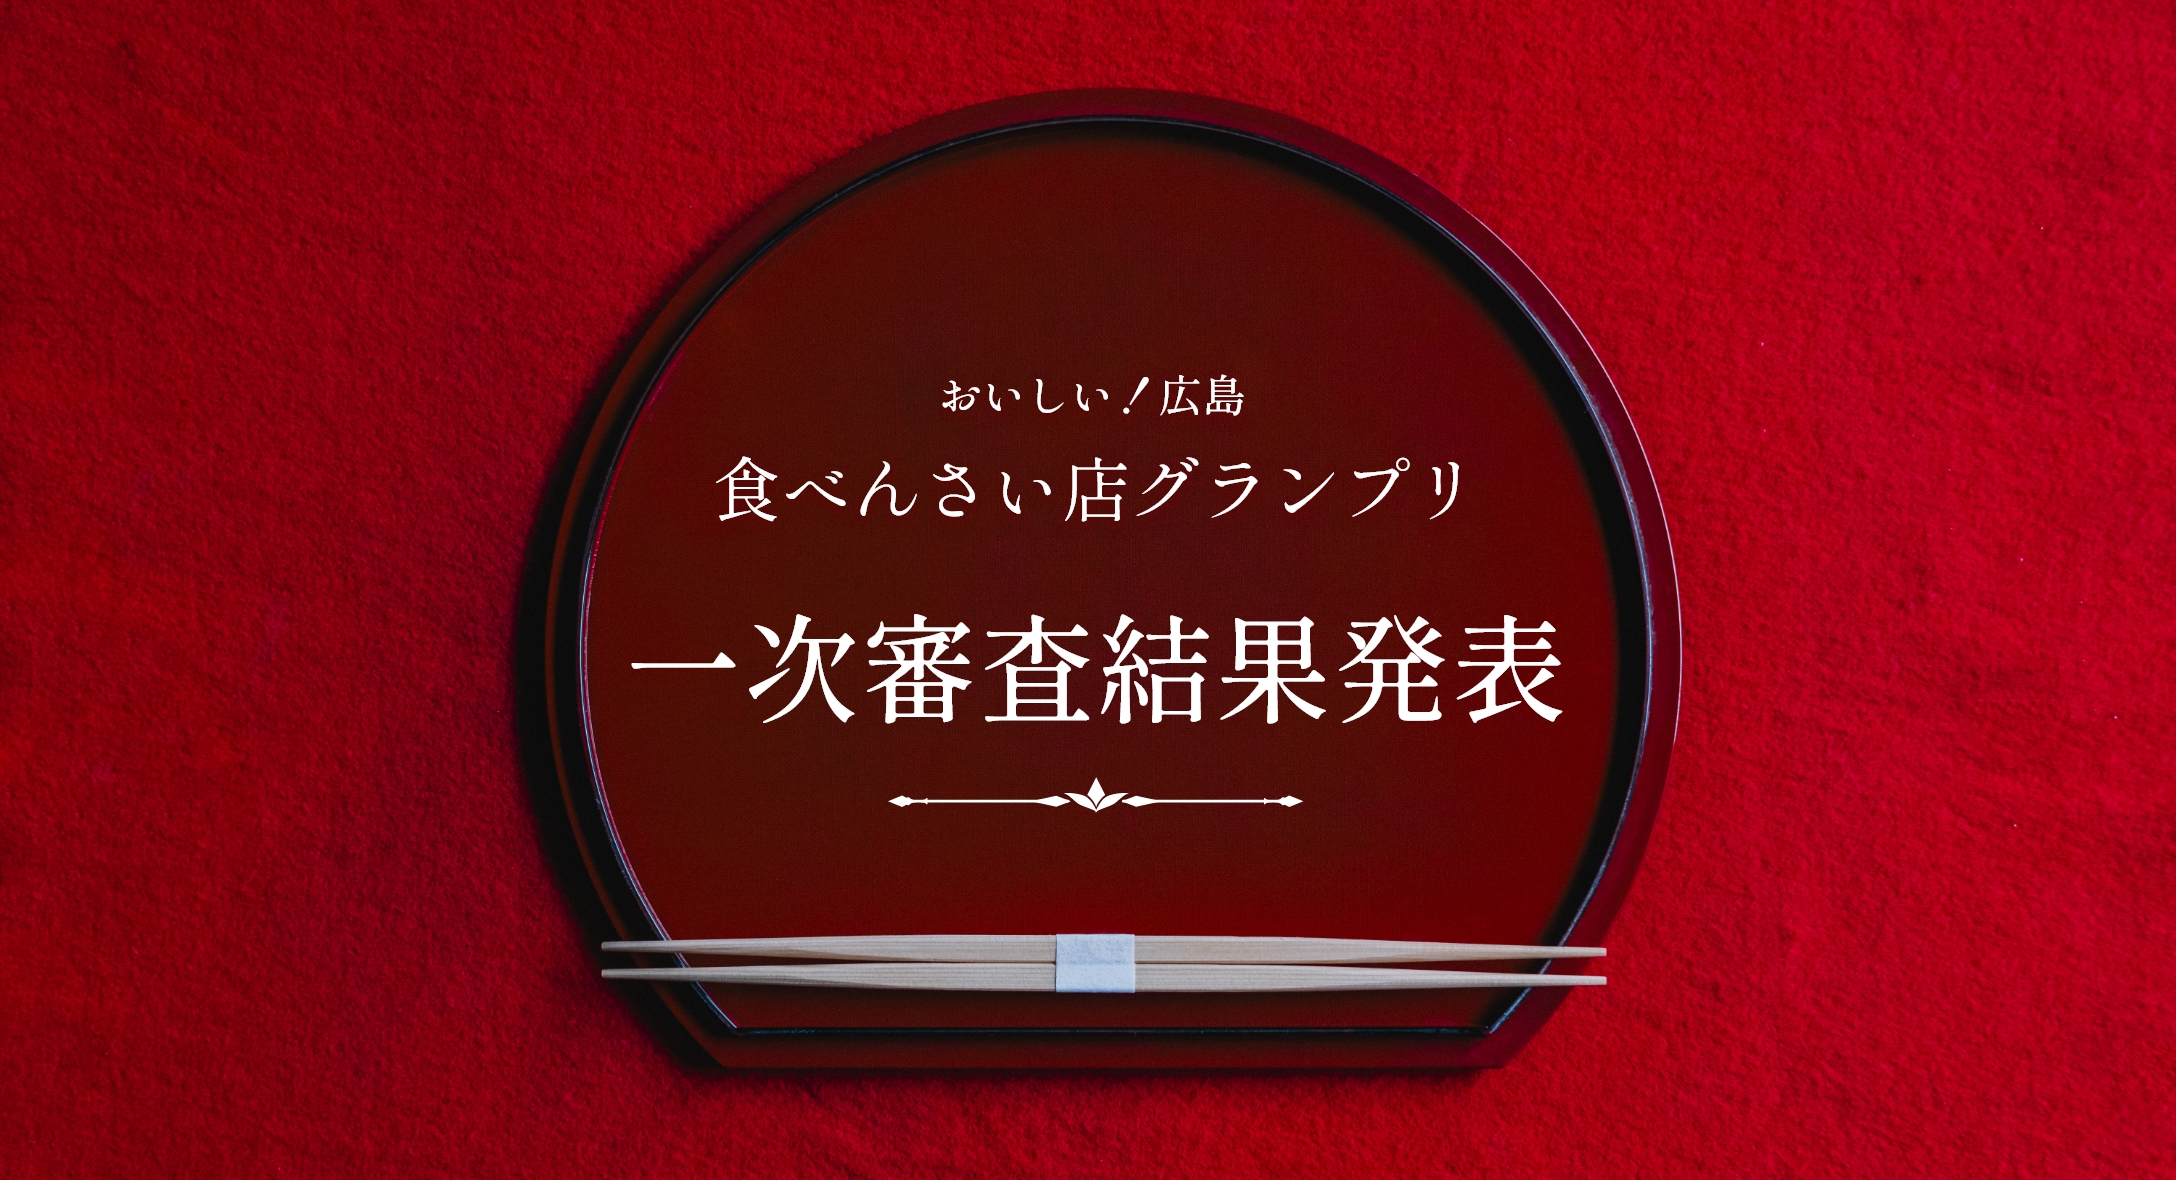 イメージ：おいしい!広島 食べんさい店グランプリ 一次審査結果発表